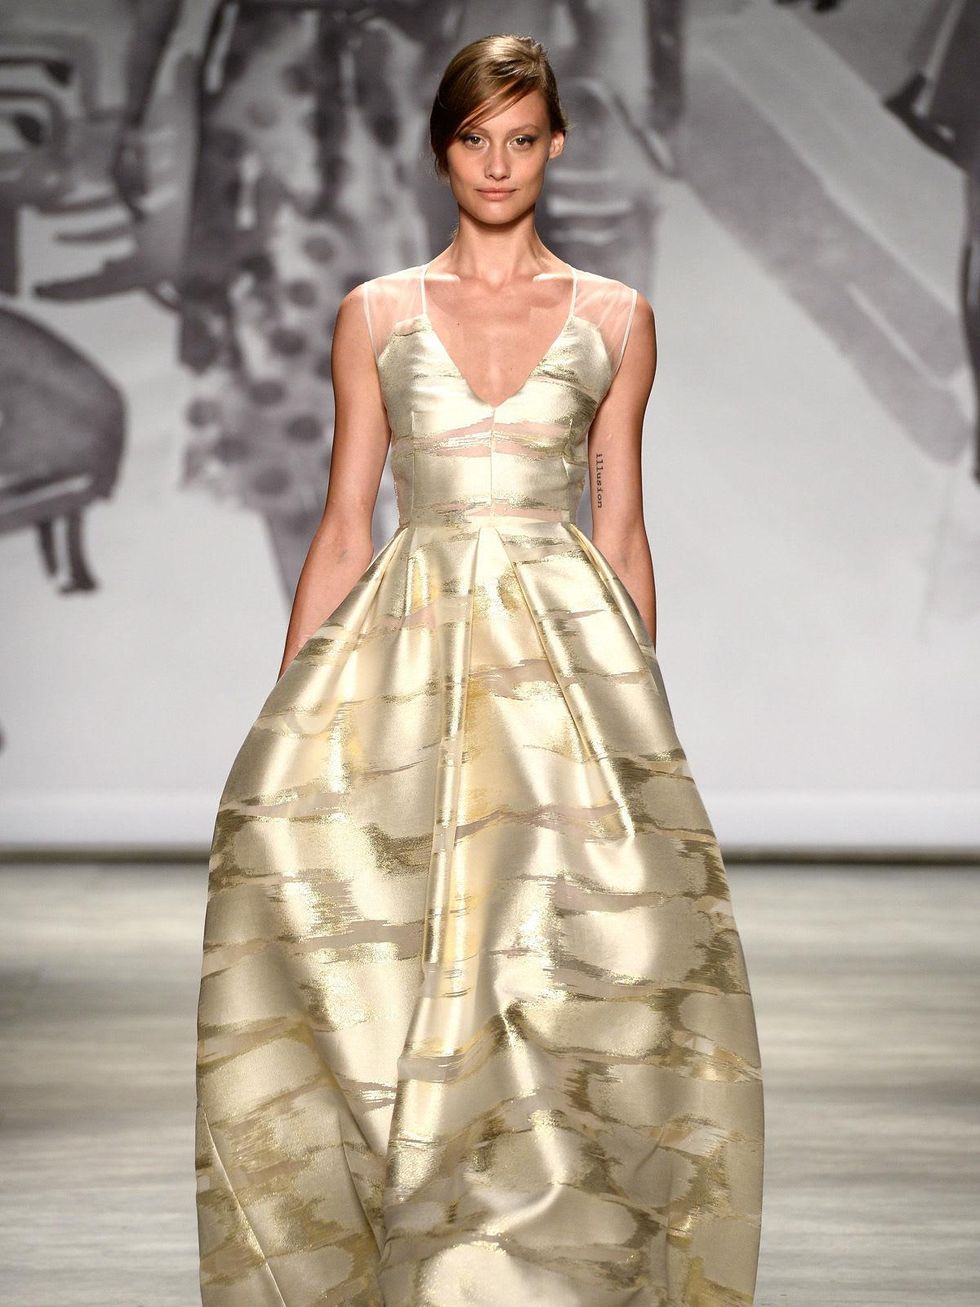 Fashion Week spring 2015 Lela Rose ball gown